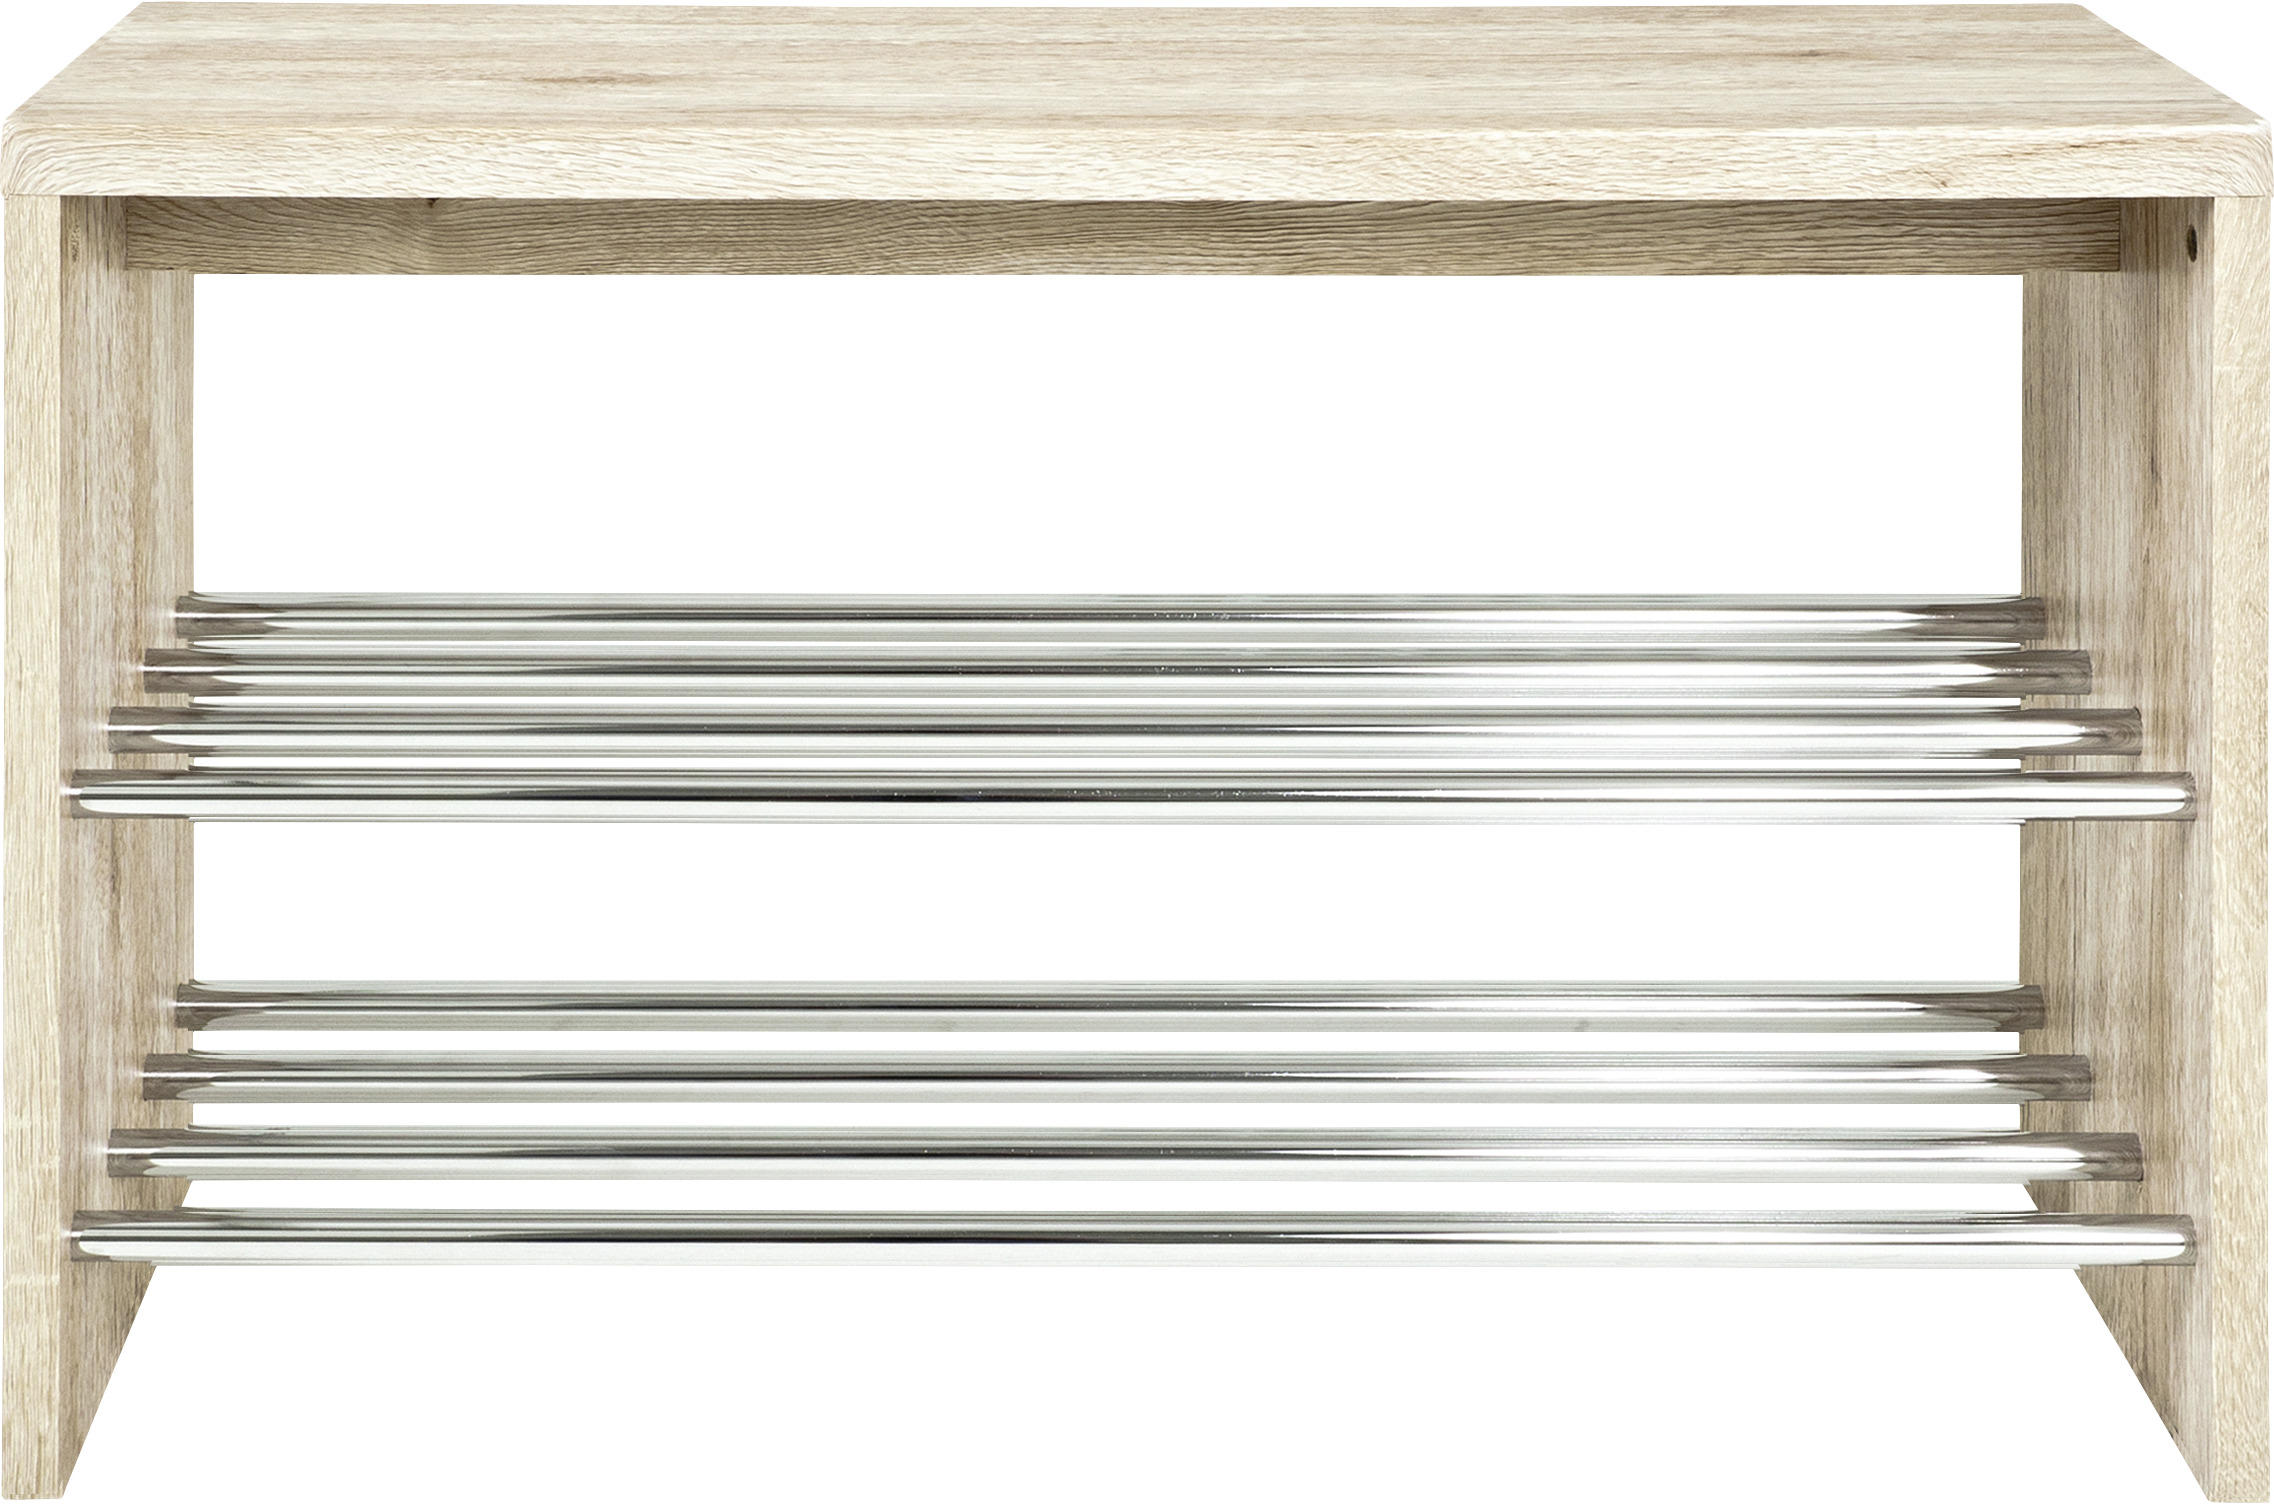 SCHUHBANK 81/55/30 cm  - Eichefarben, Design, Holzwerkstoff/Metall (81/55/30cm) - Carryhome